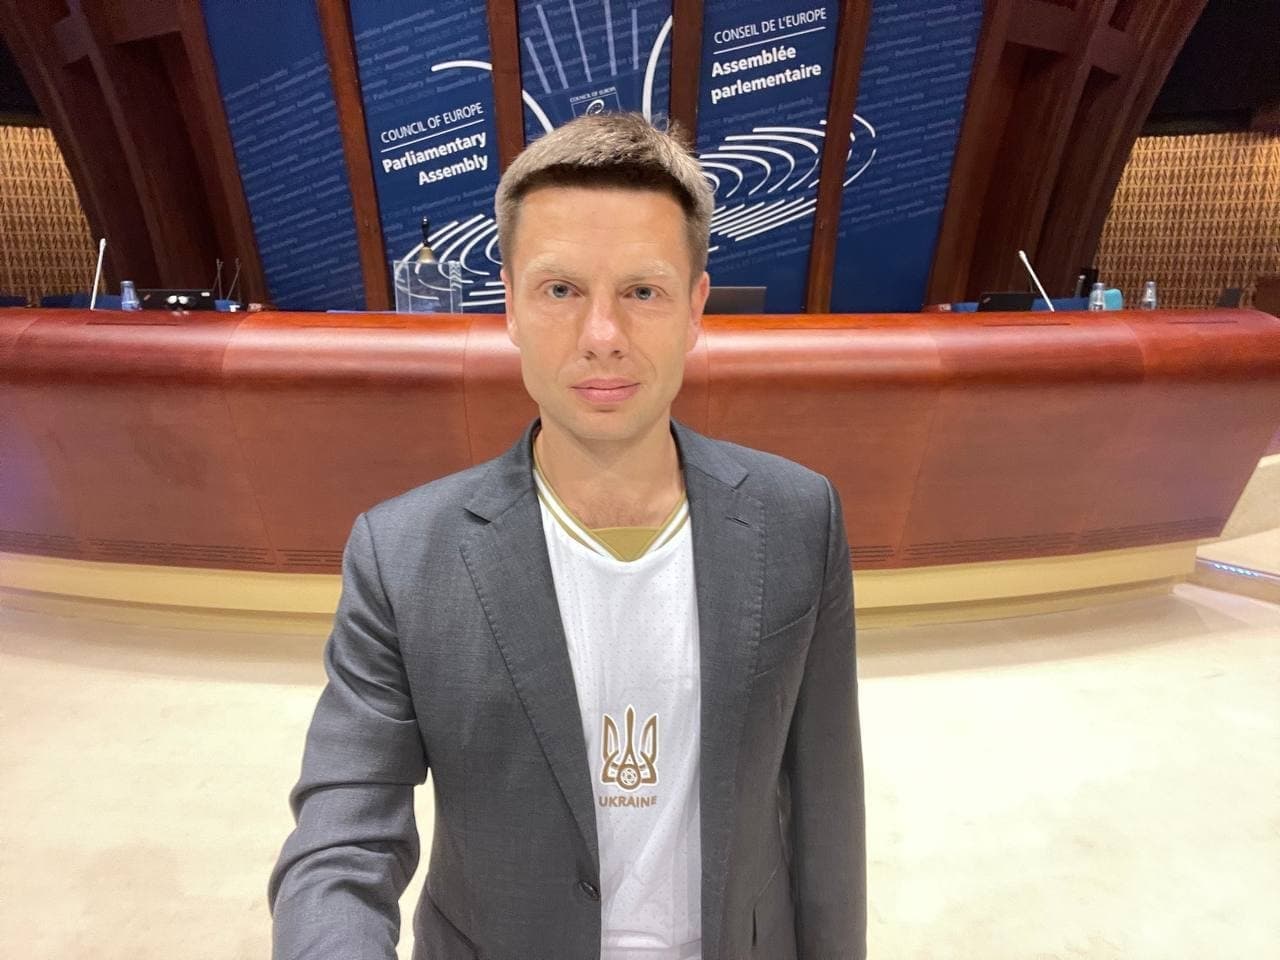 Фото с антисептиком, «покатушки» у посольства России и футболка для Толстого: чем Гончаренко всю неделю занимался в ПАСЕ - 2 - изображение